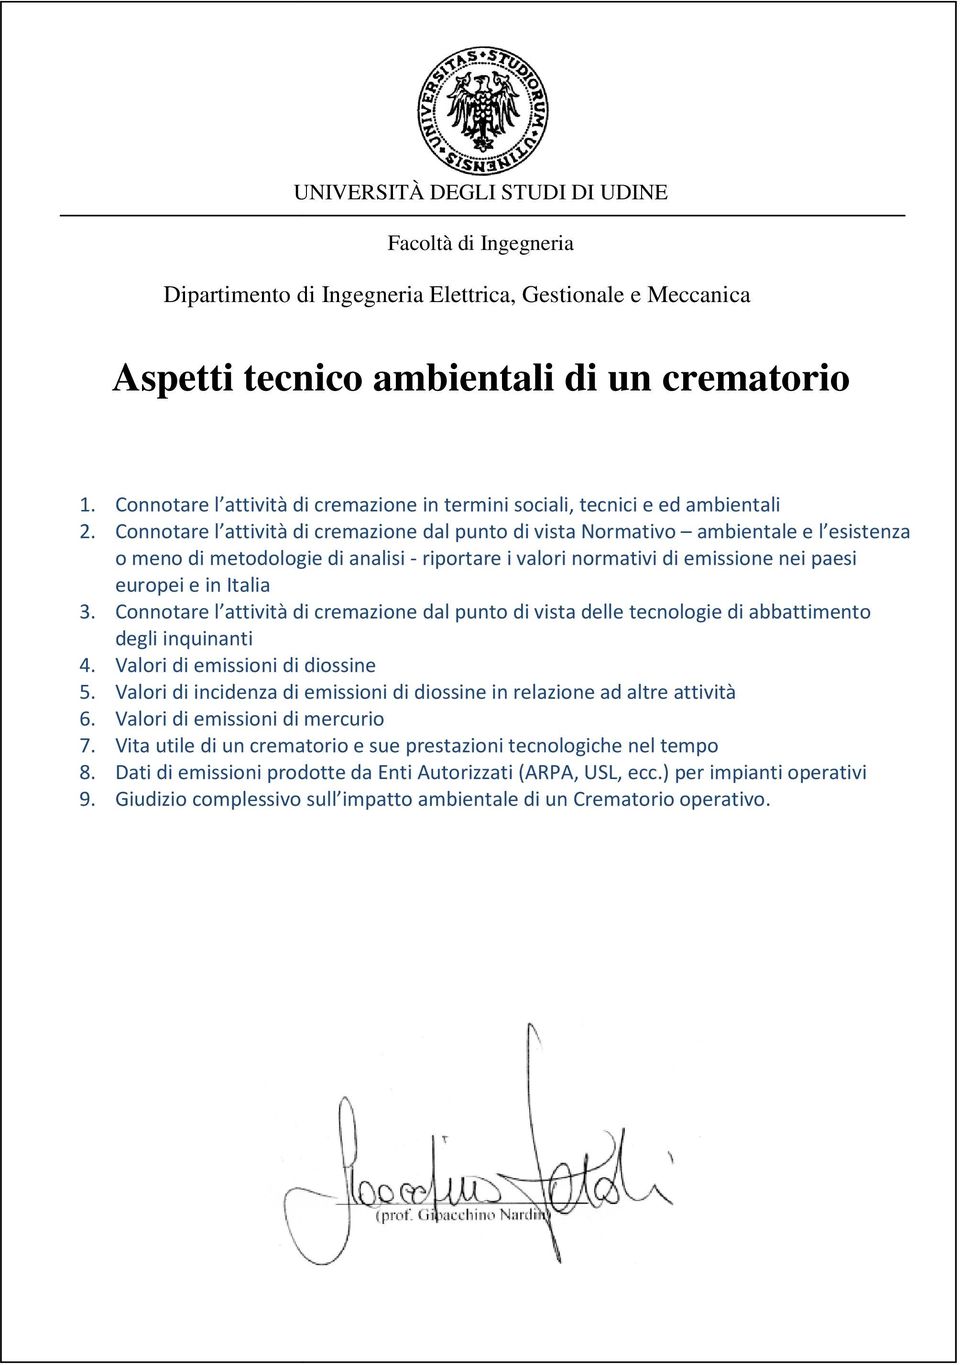 Connotare l attività di cremazione dal punto di vista Normativo ambientale e l esistenza o meno di metodologie di analisi - riportare i valori normativi di emissione nei paesi europei e in Italia 3.